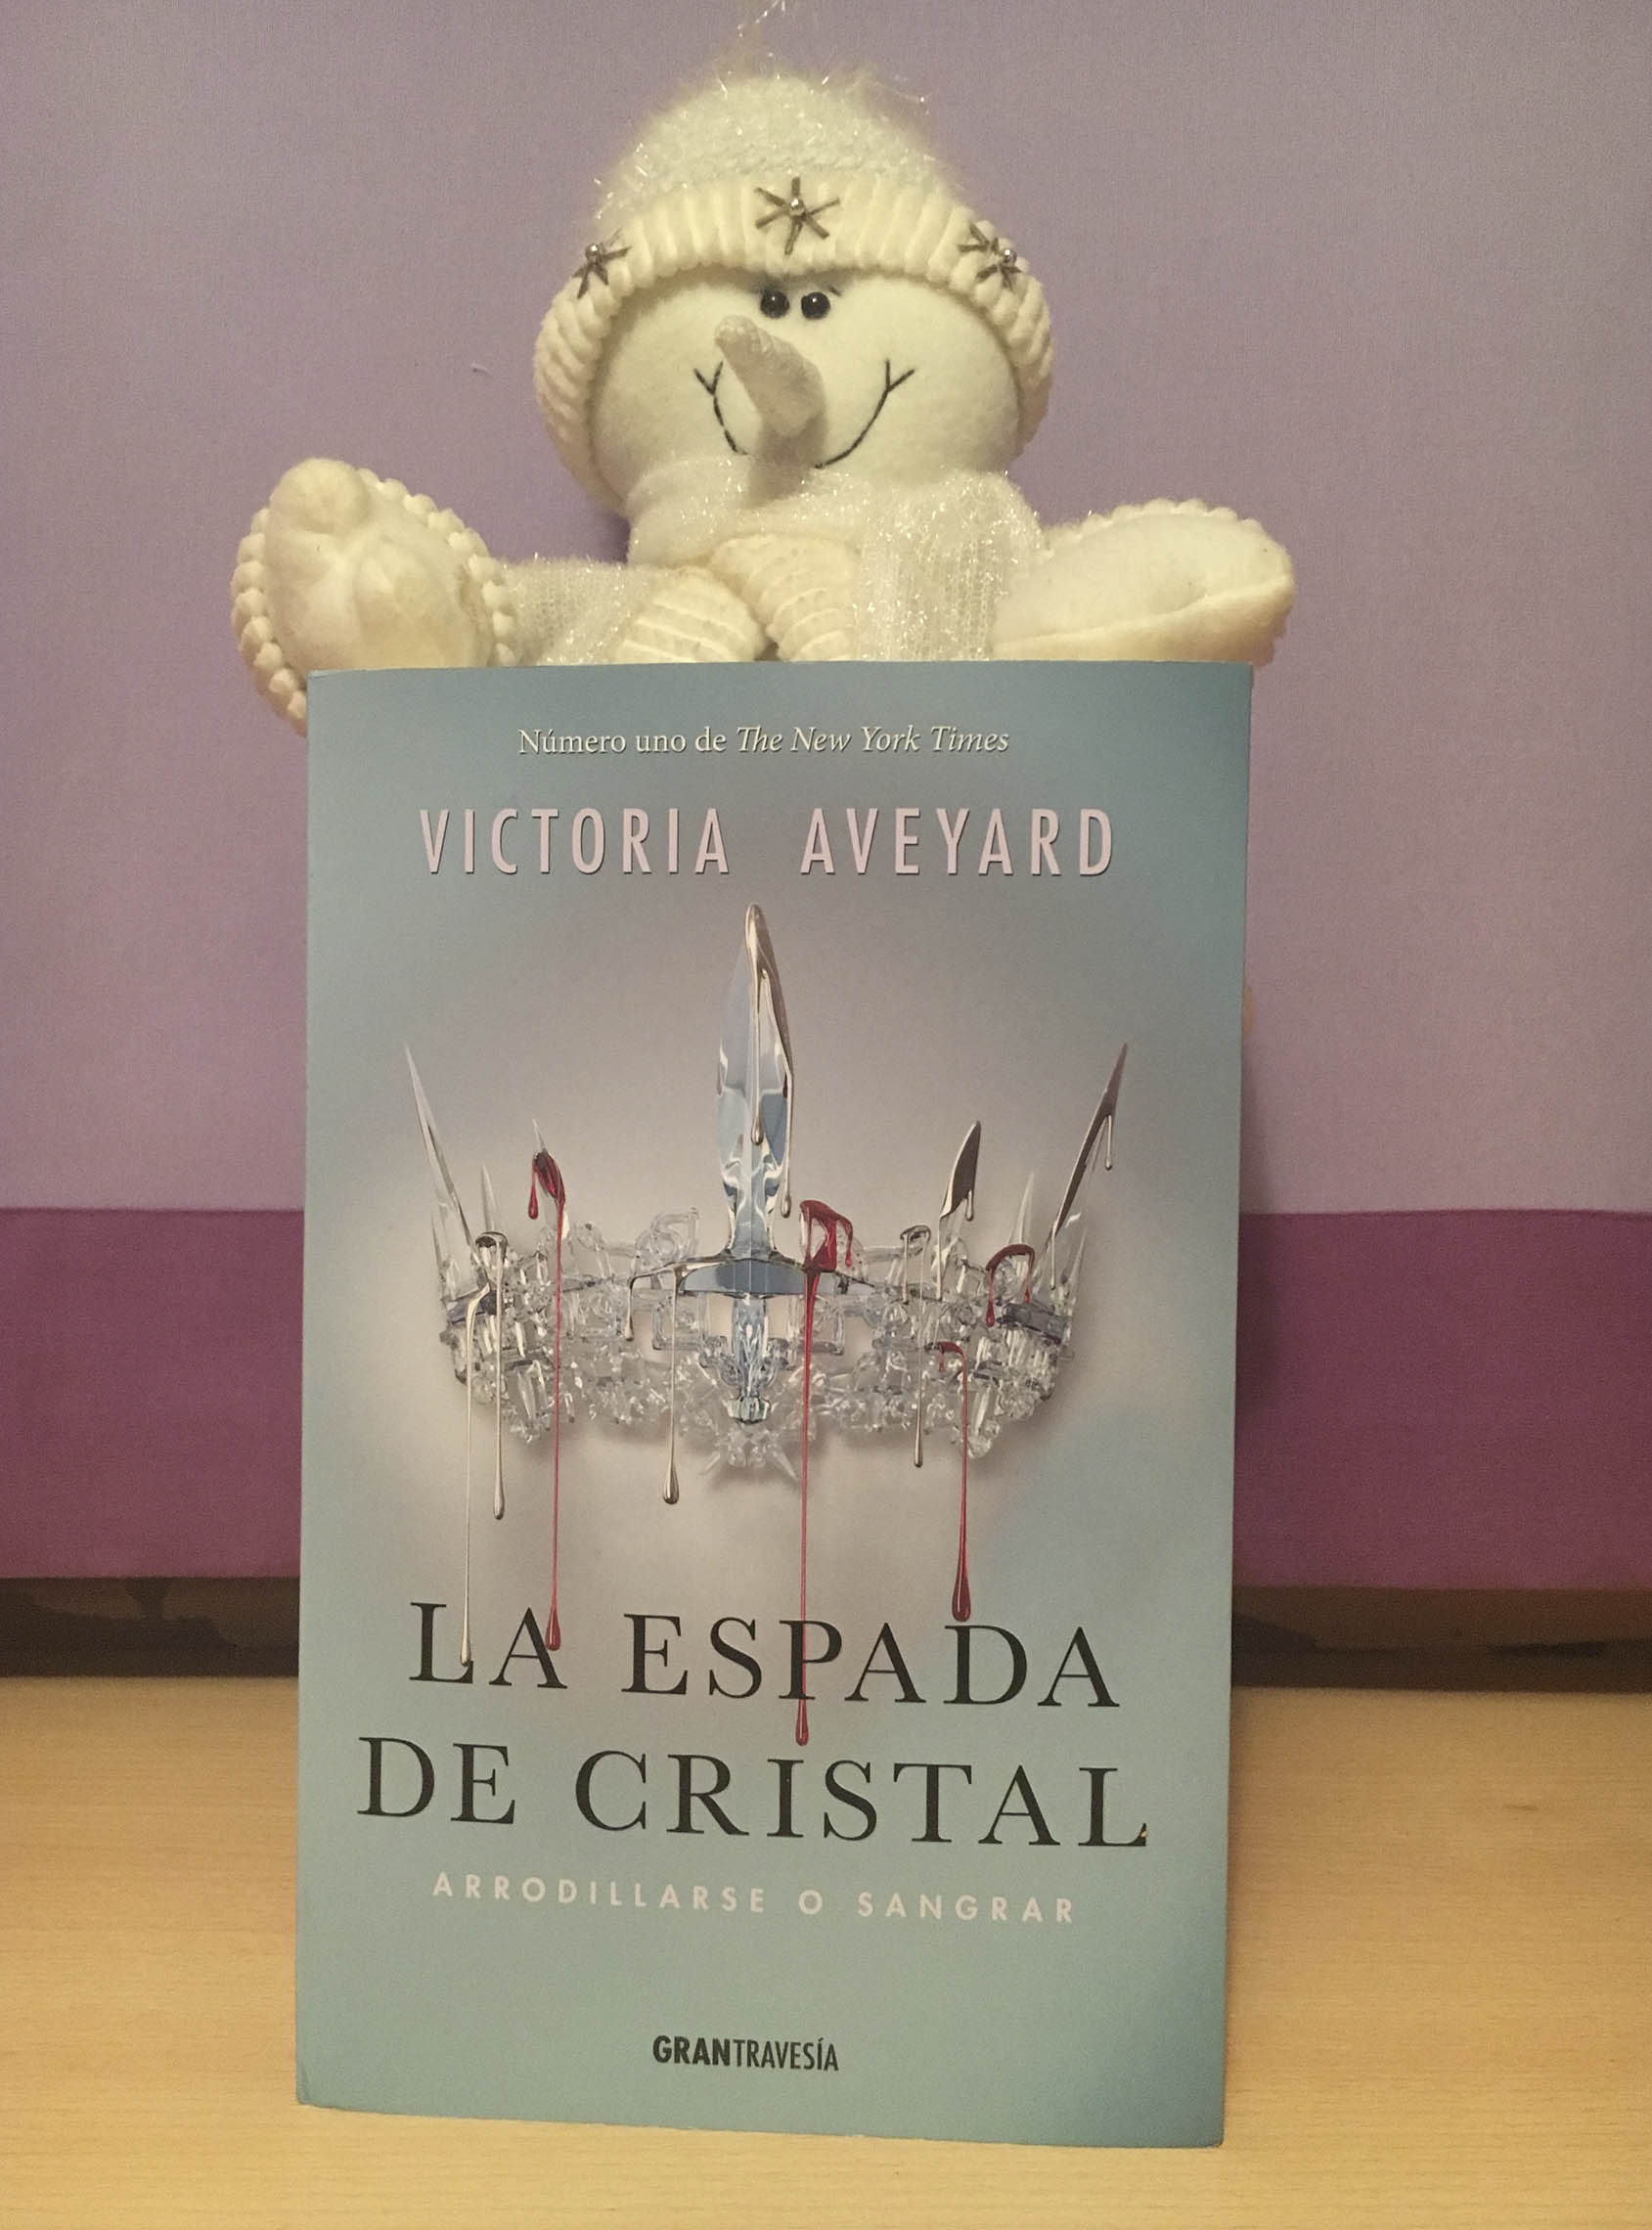 La Espada de Cristal, de Victoria Aveyard - Reseña